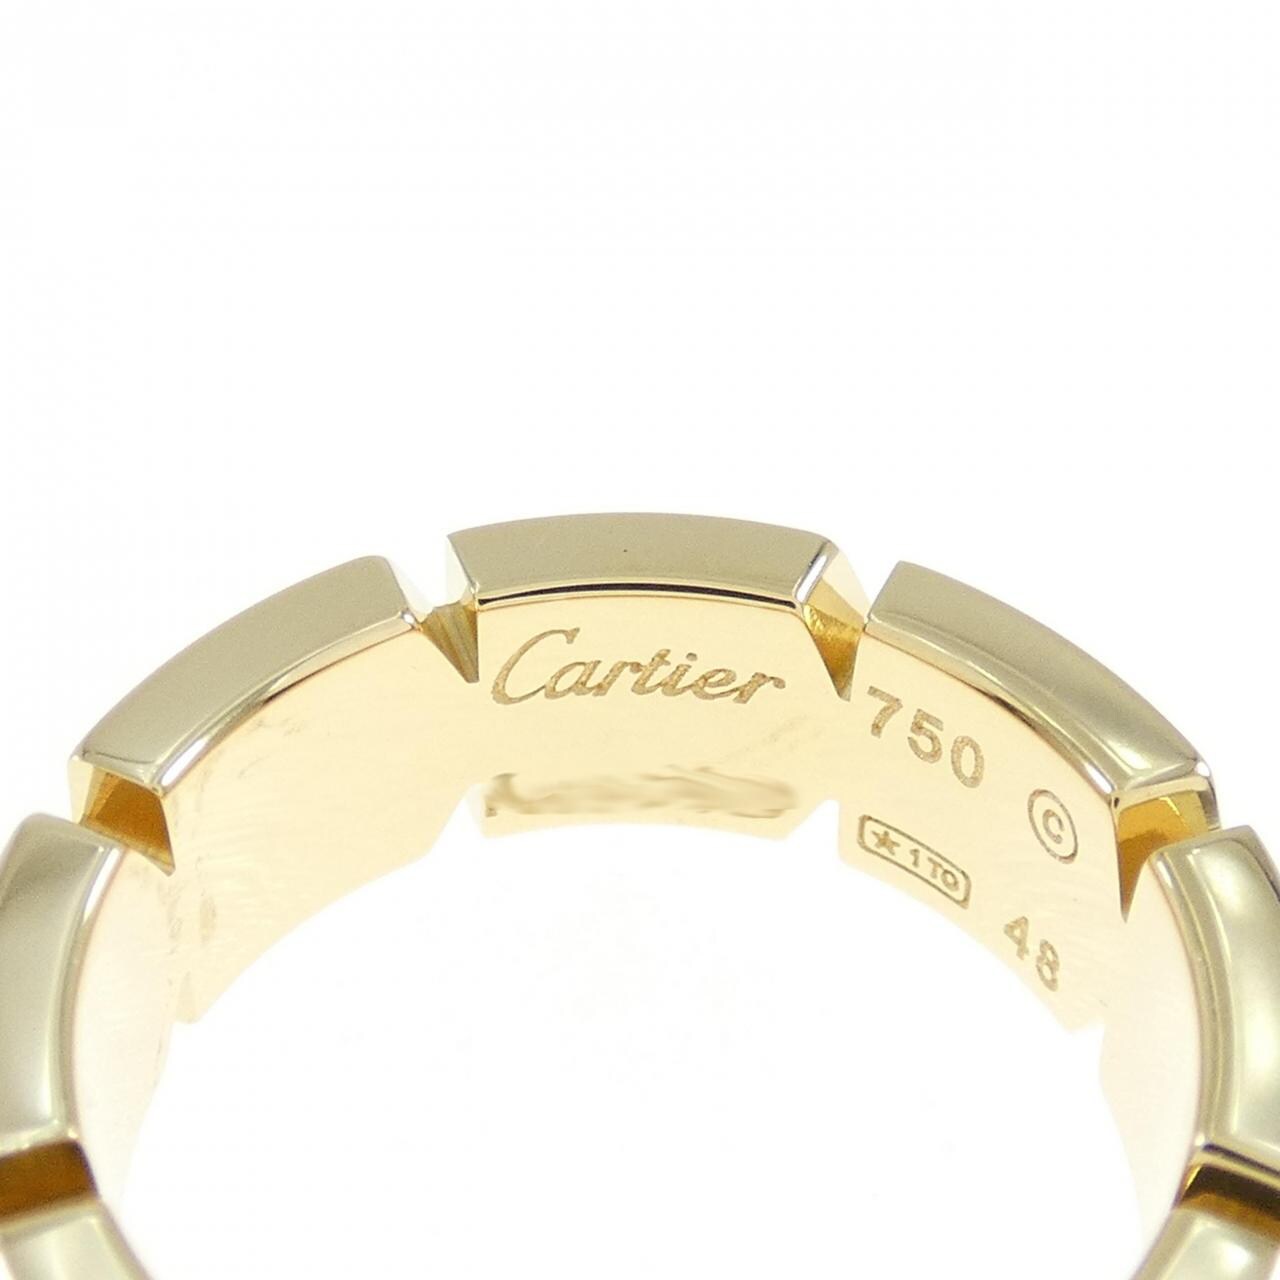 Cartier Tank Française half 鑽石指